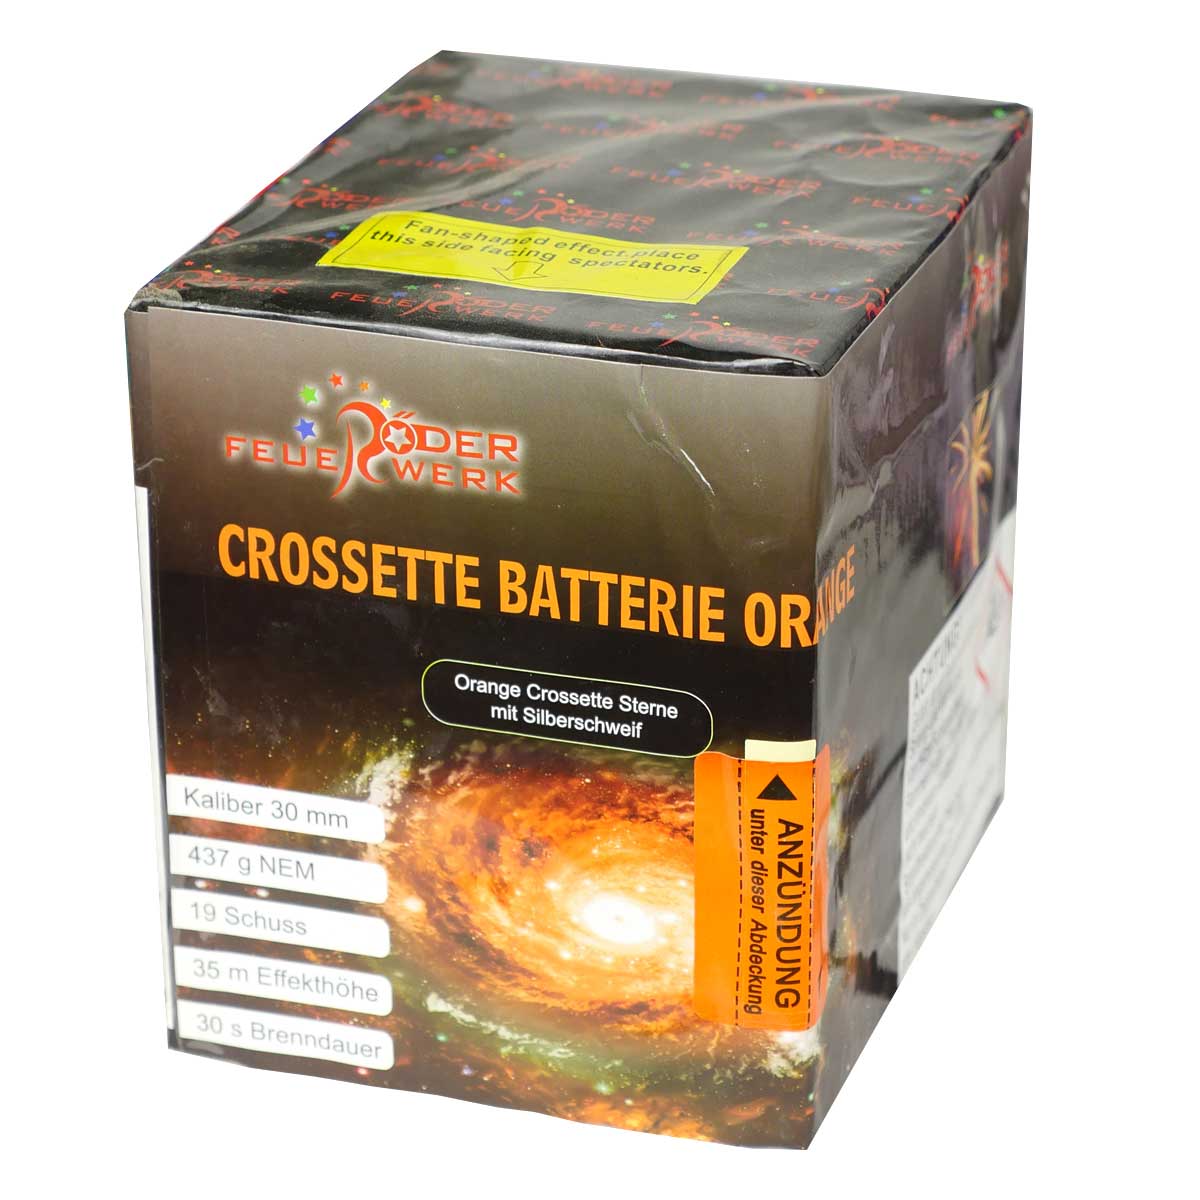 Crossette Batterie pink von Röder Feuerwerk online kaufen